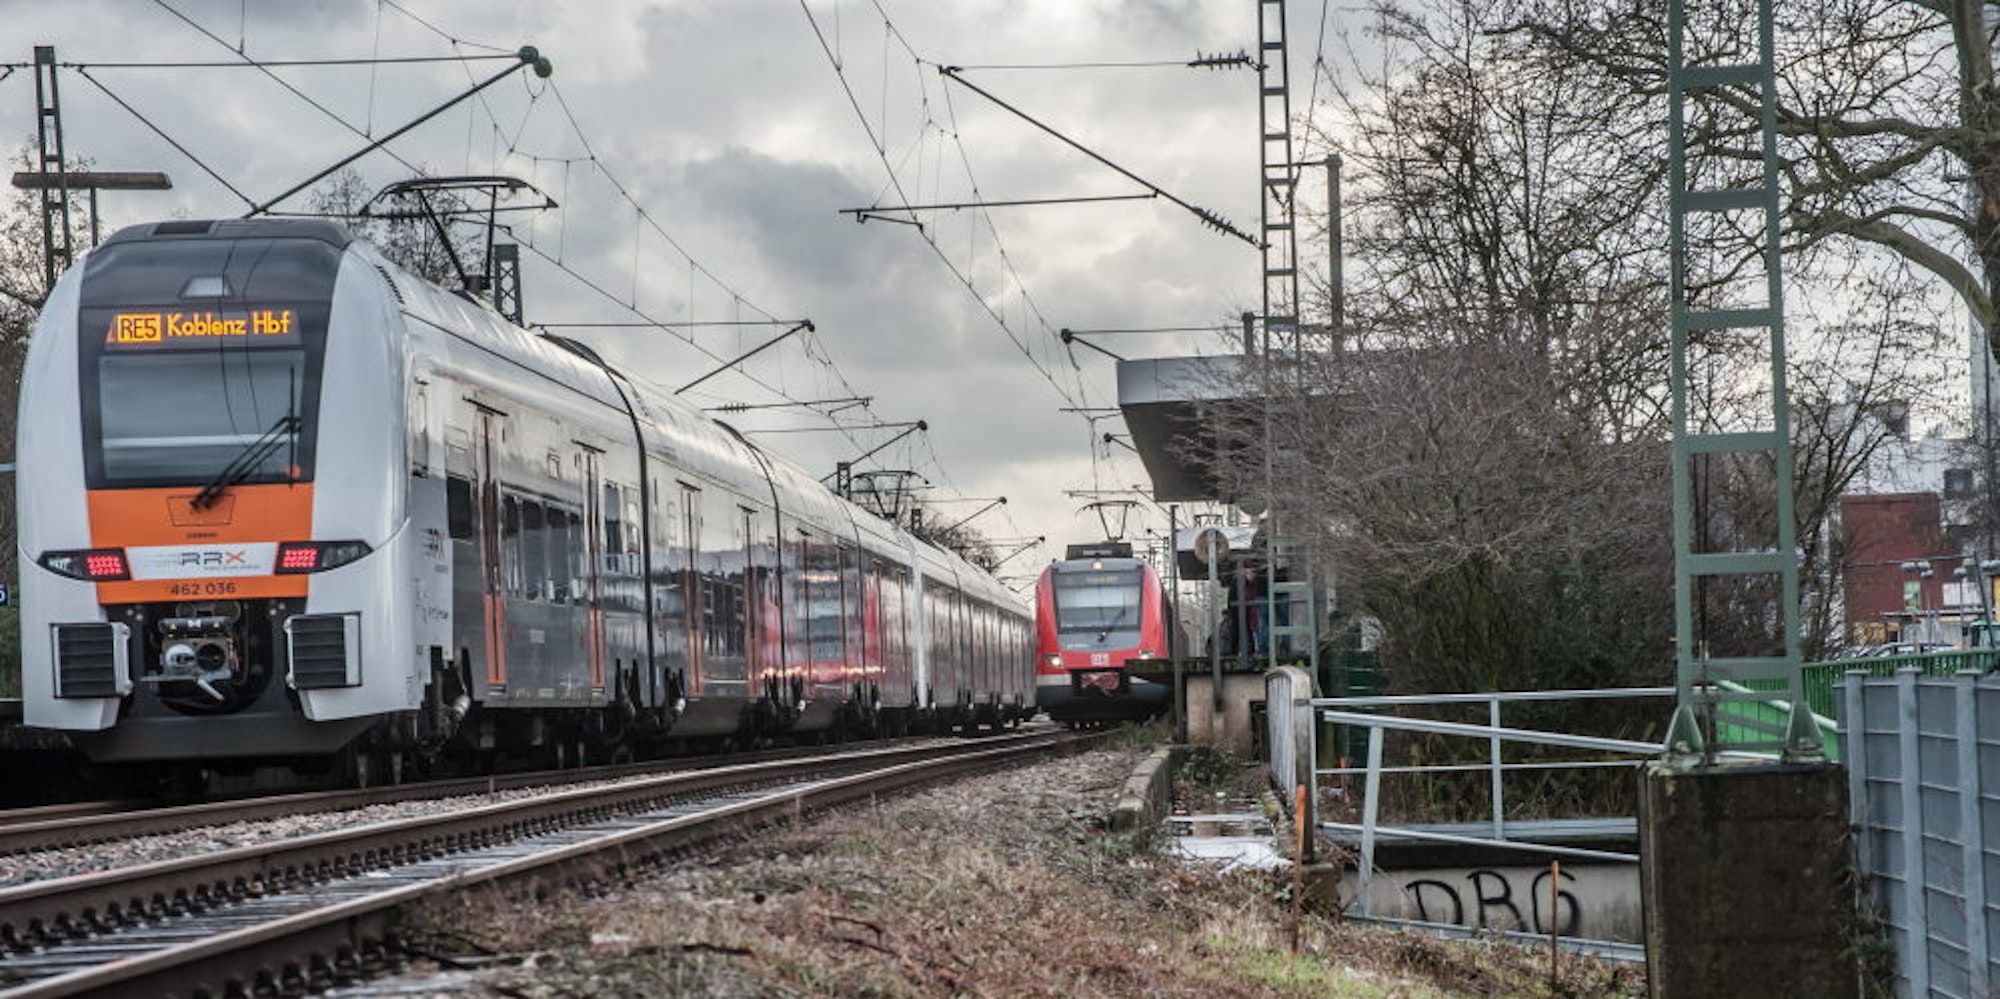 RRX und S-Bahn in Leverkusen-Mitte. Für den RRX soll ein Gleis rechts von den bestehenden Schienen gelegt werden.